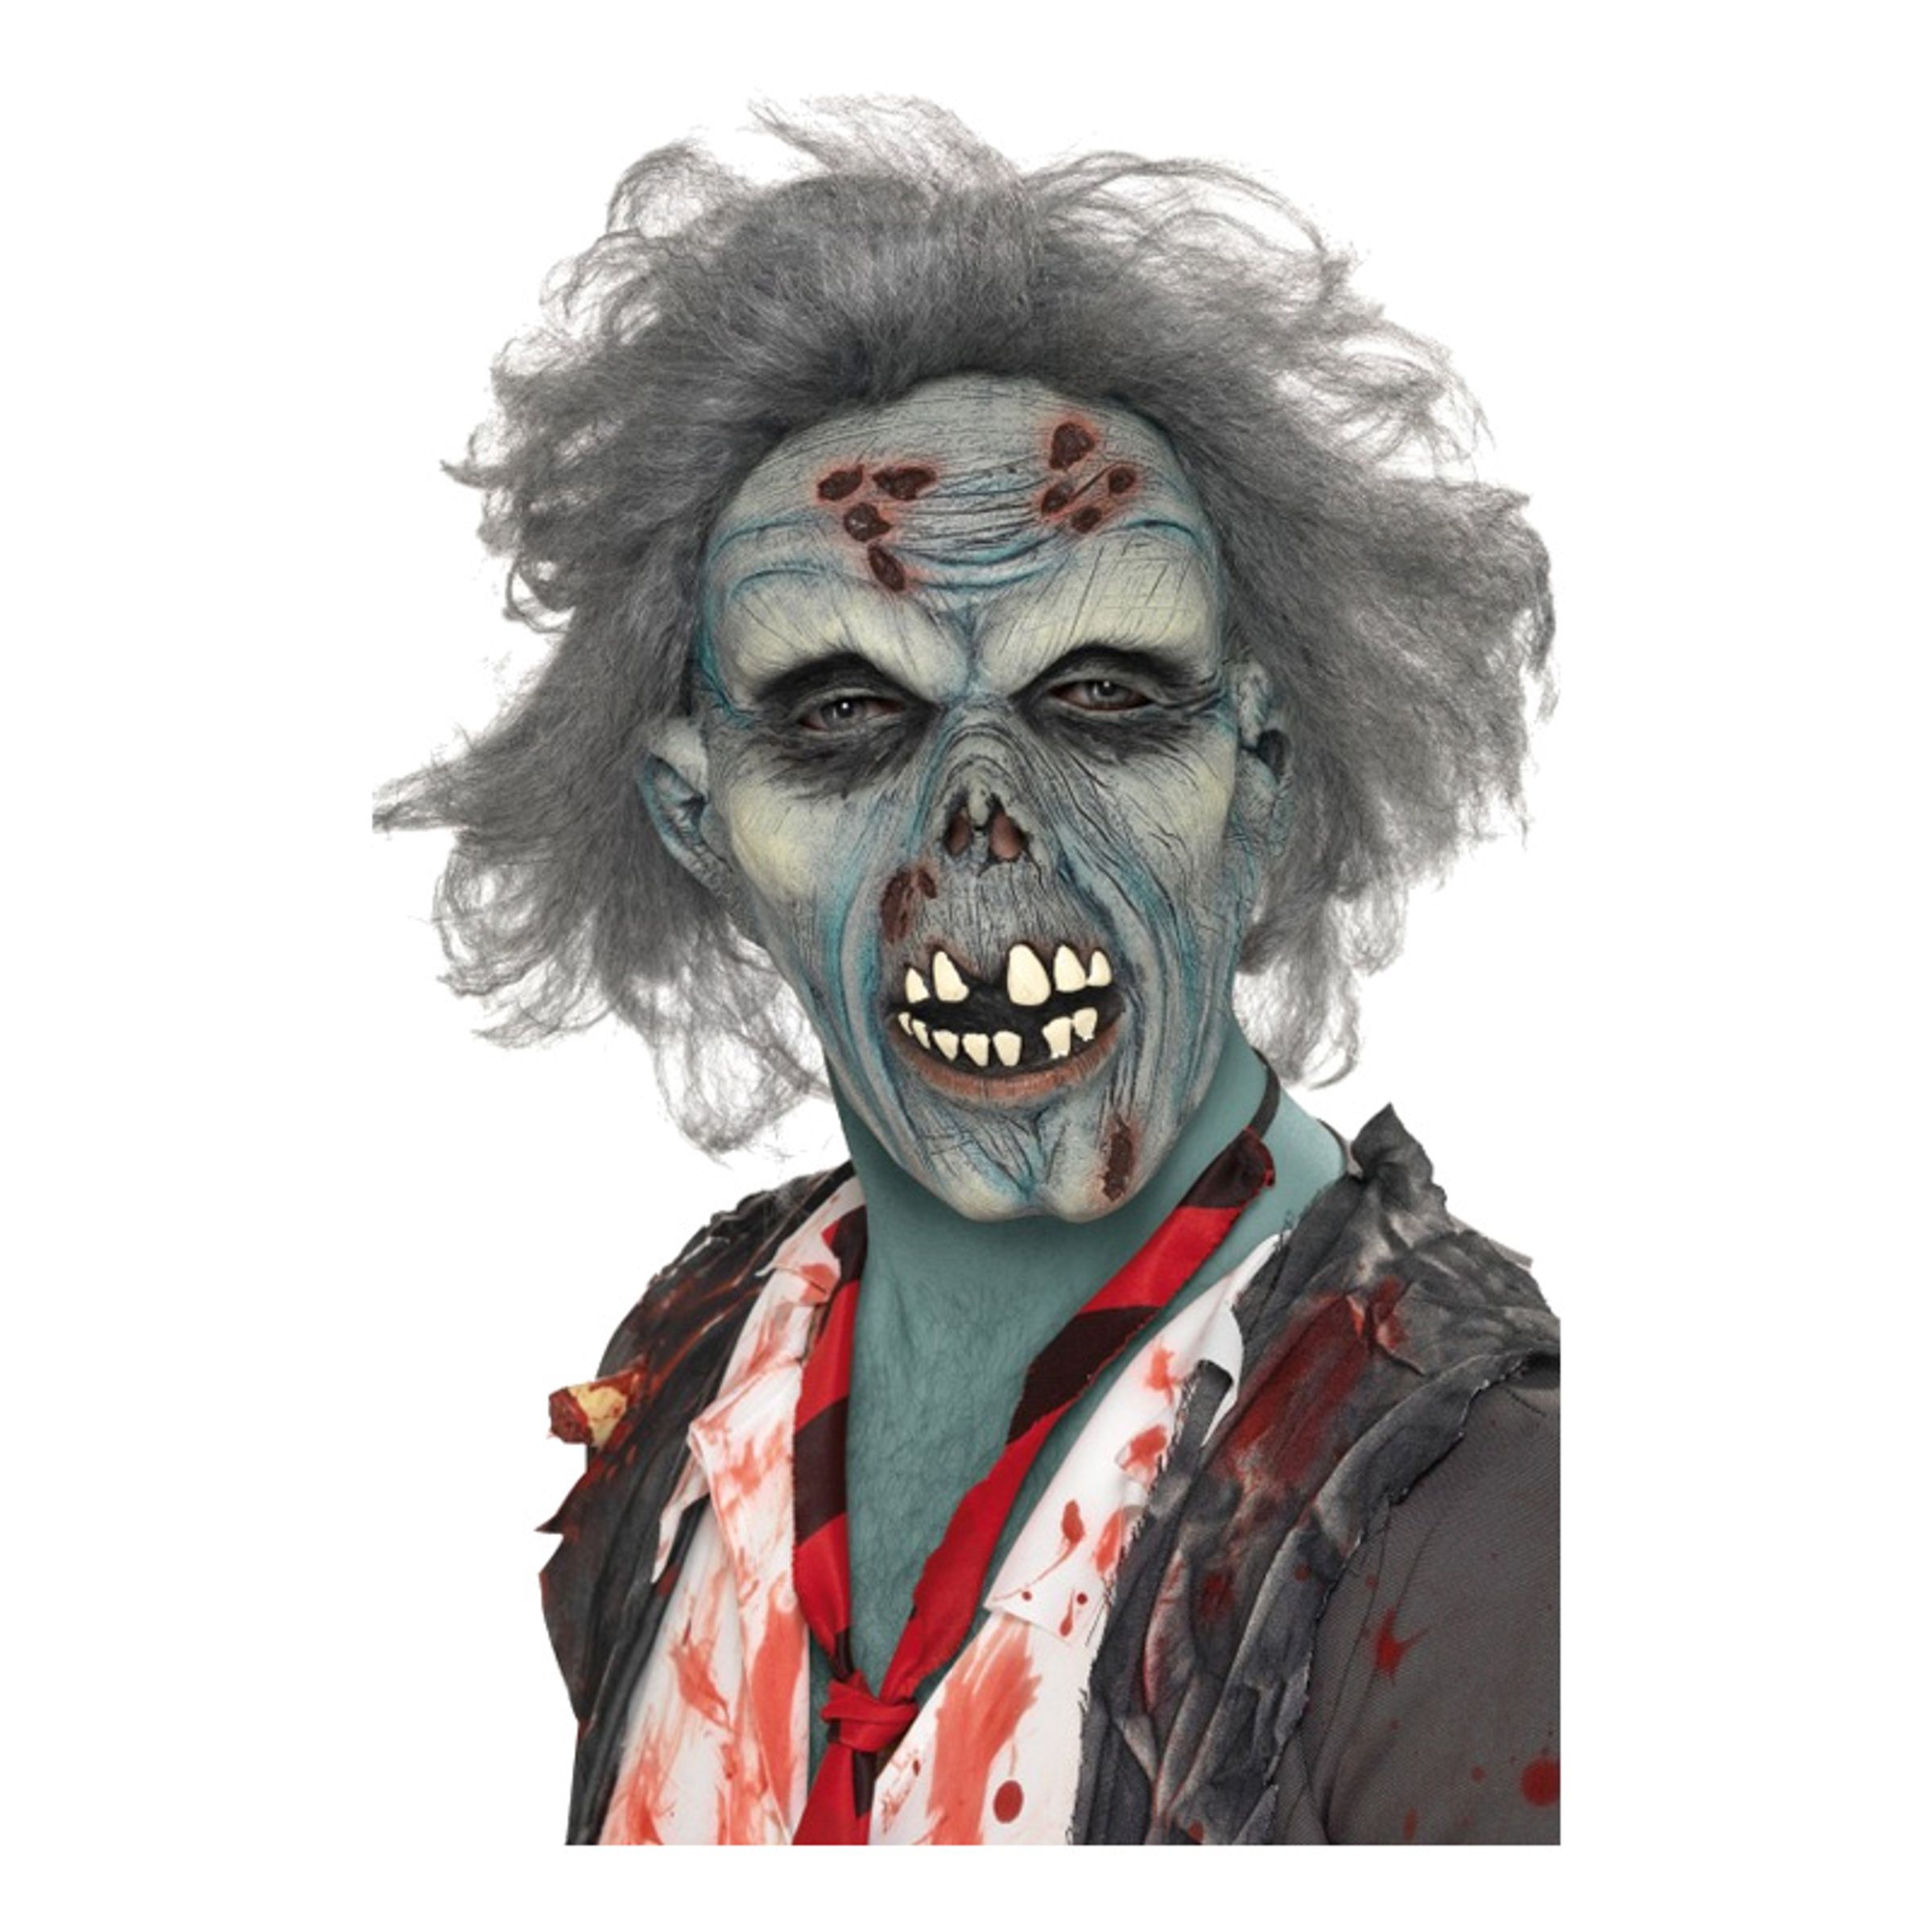 Föruttnande Zombie Mask - One size